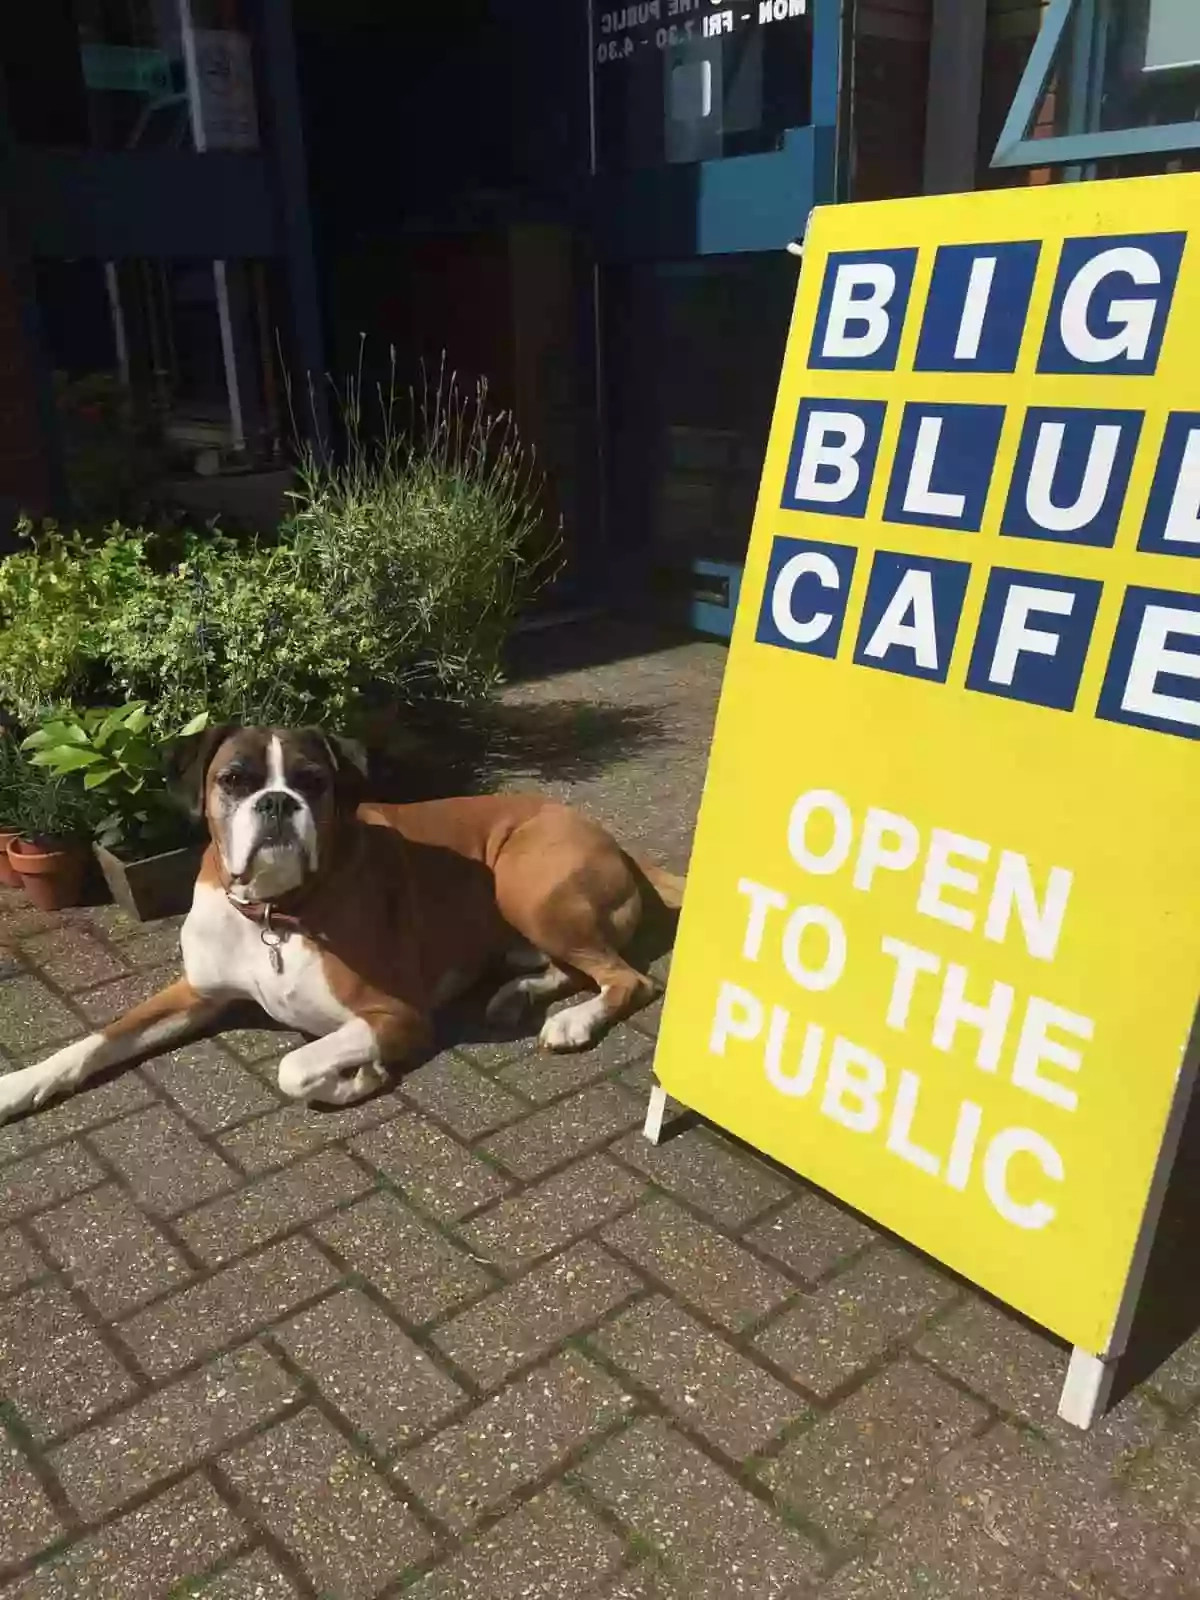 Big Blue Cafe